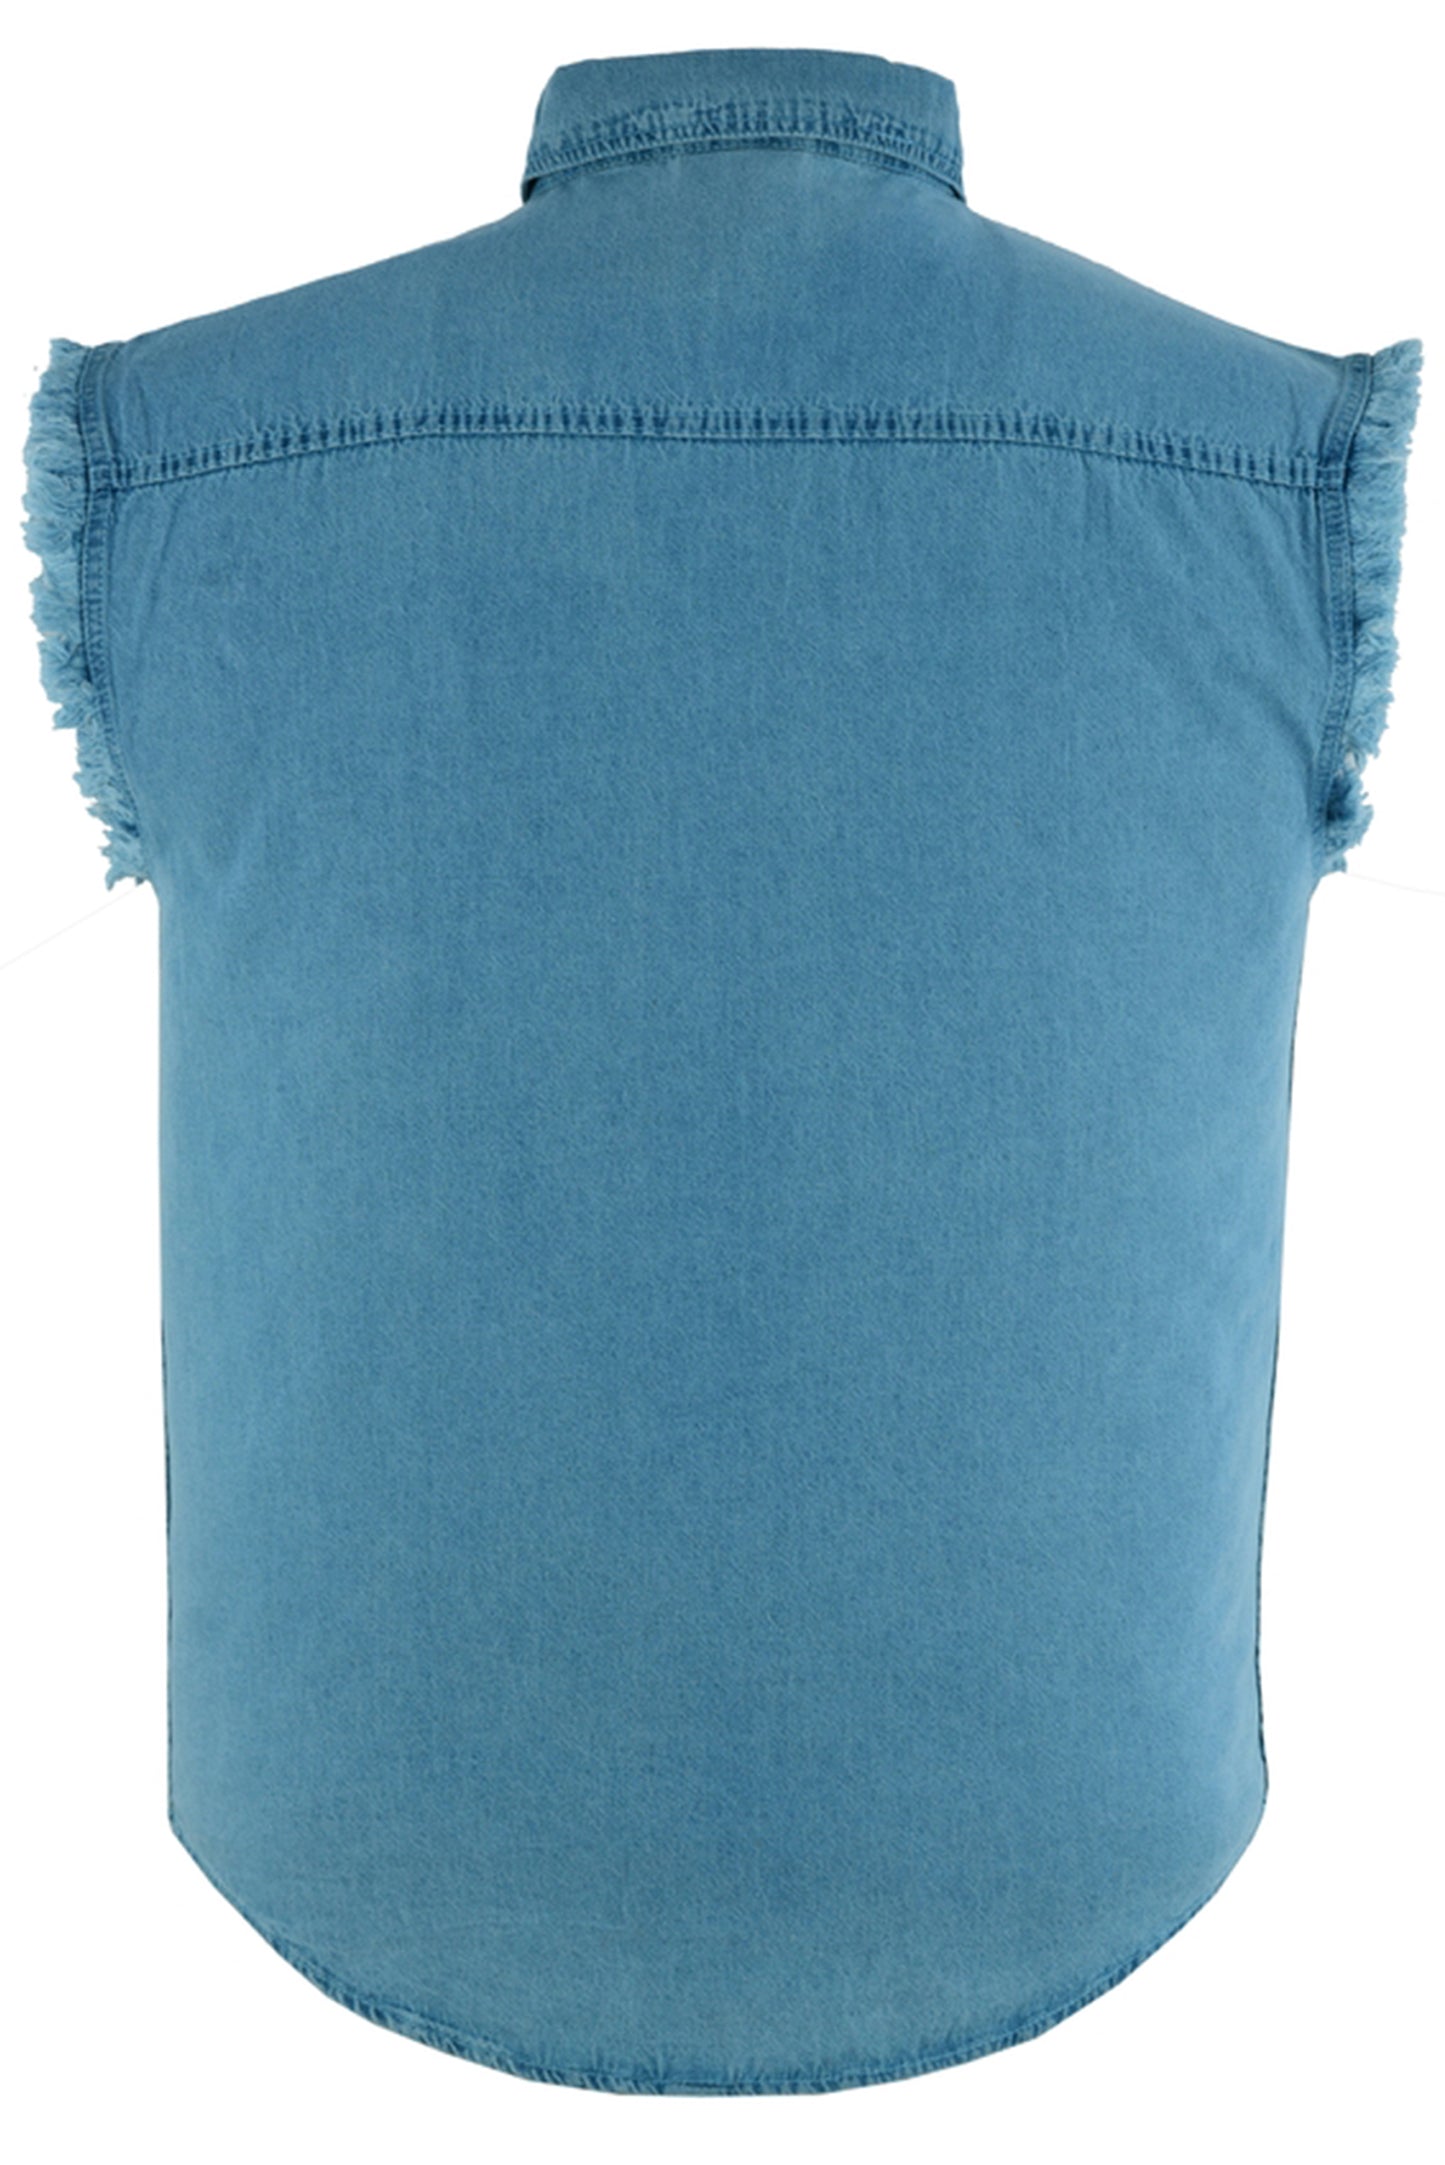 DM6002 Men's Blue Lightweight Sleeveless Denim Shirt